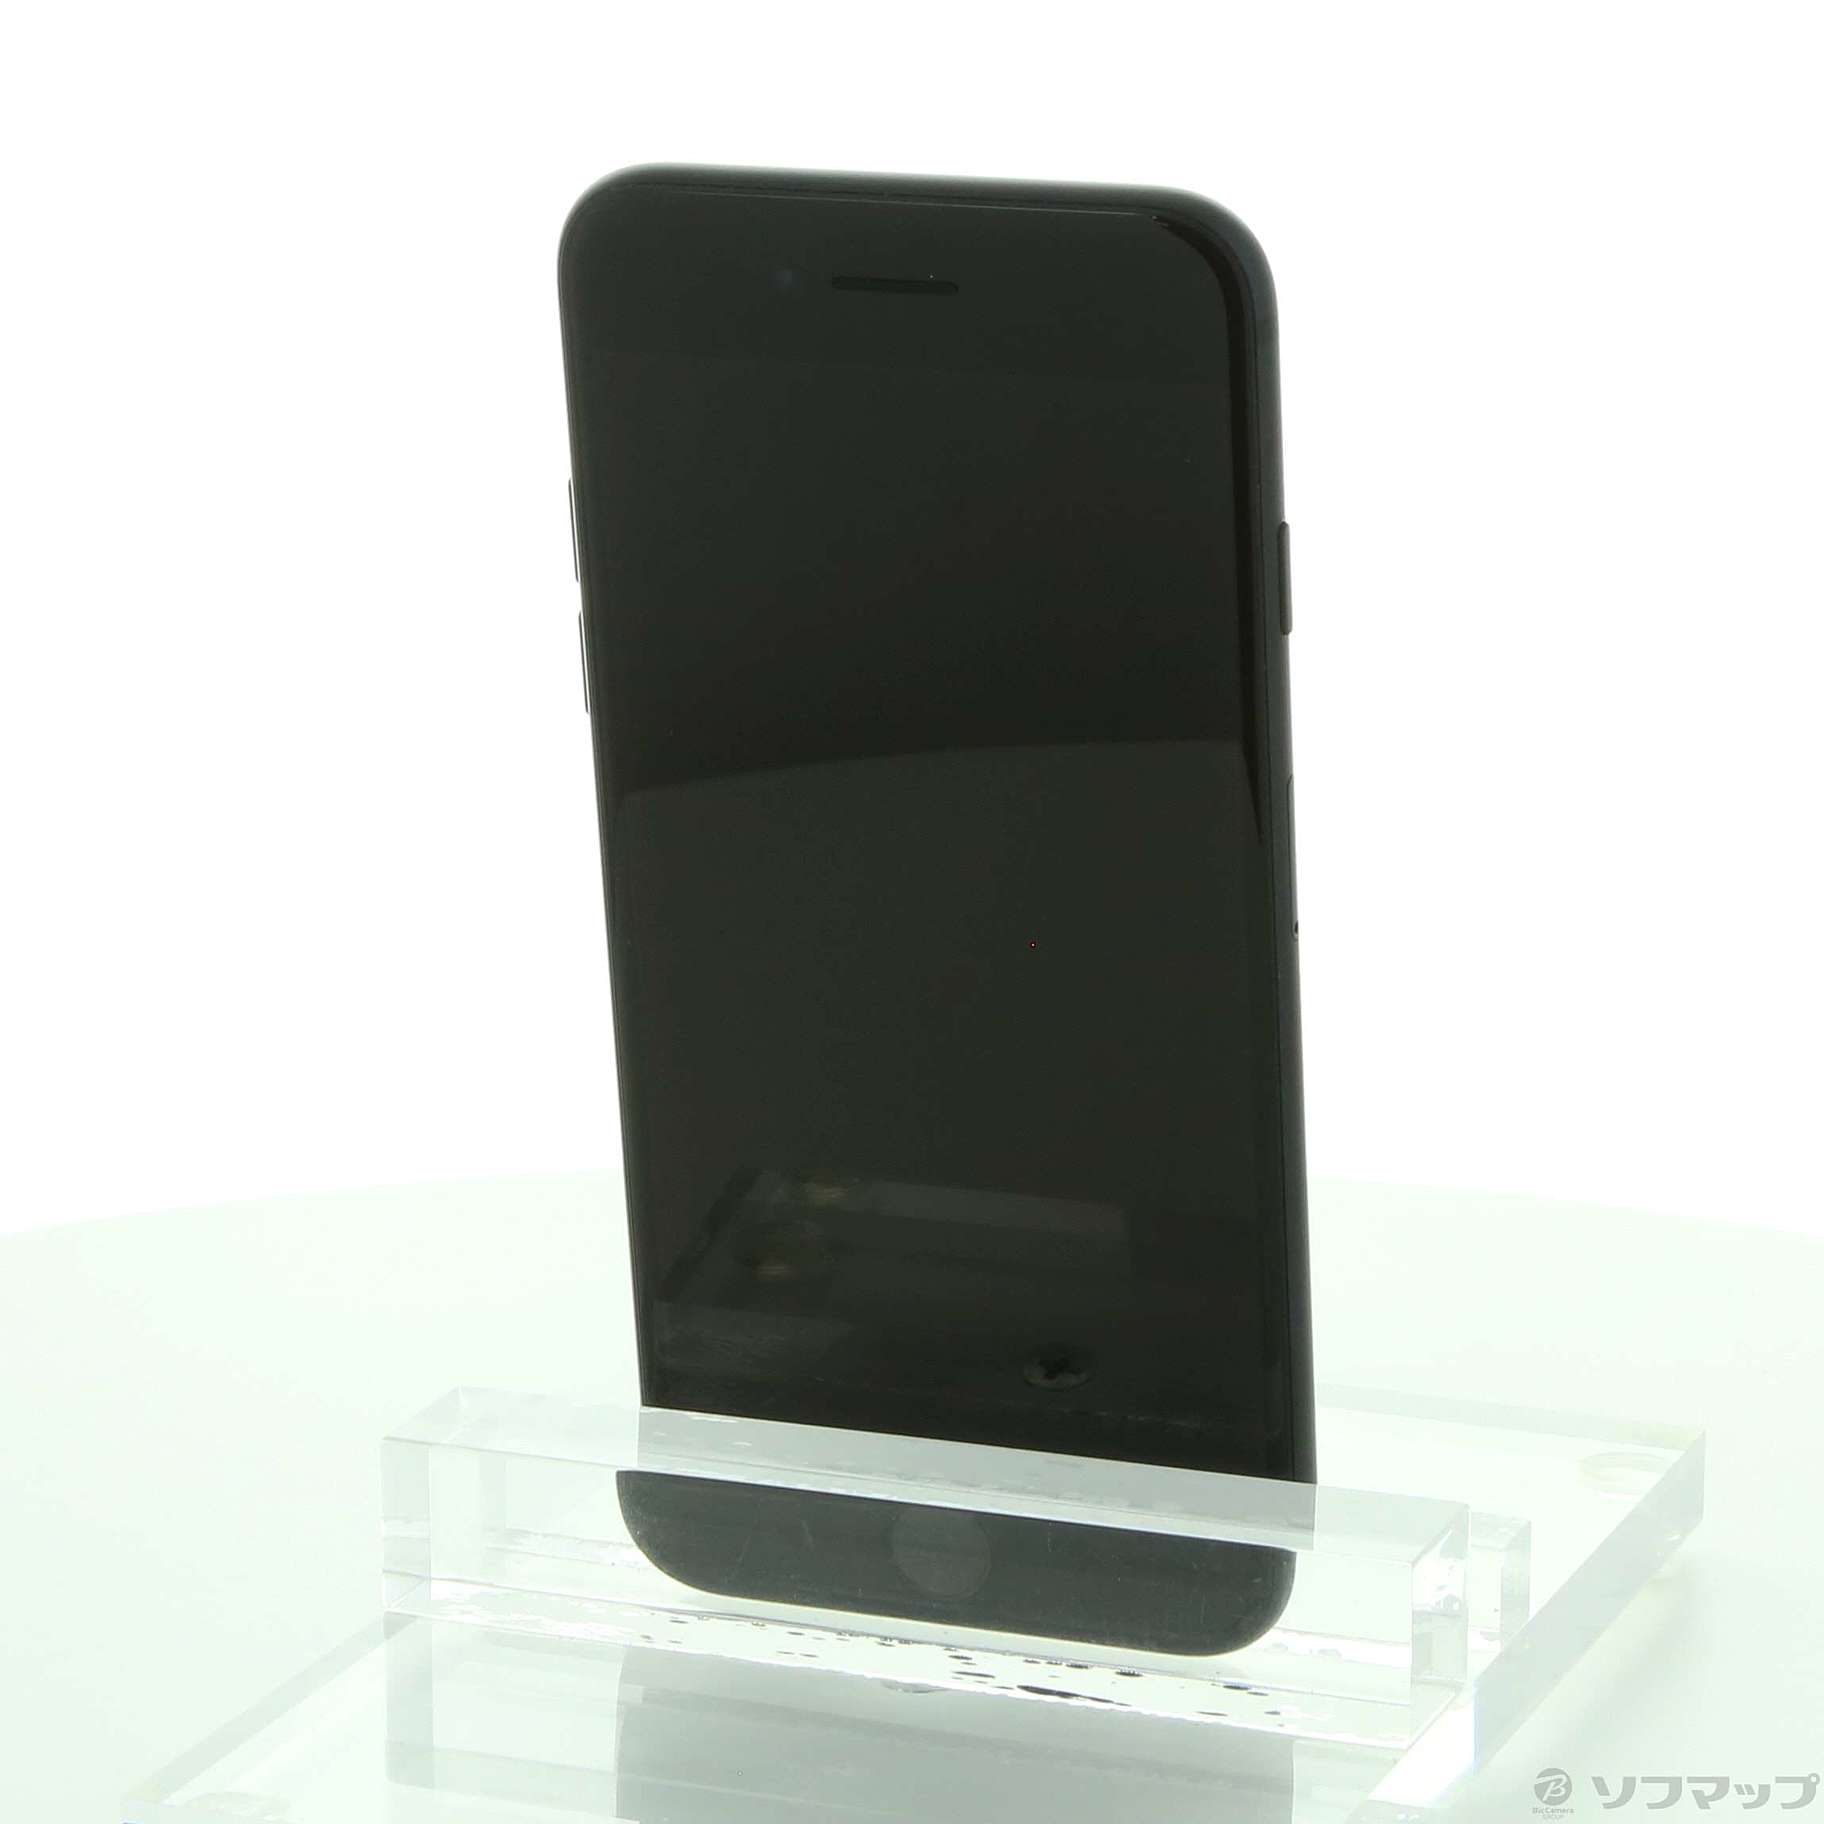 国産特価SoftBank MNCK2J/A iPhone 7 128GB B iPhone